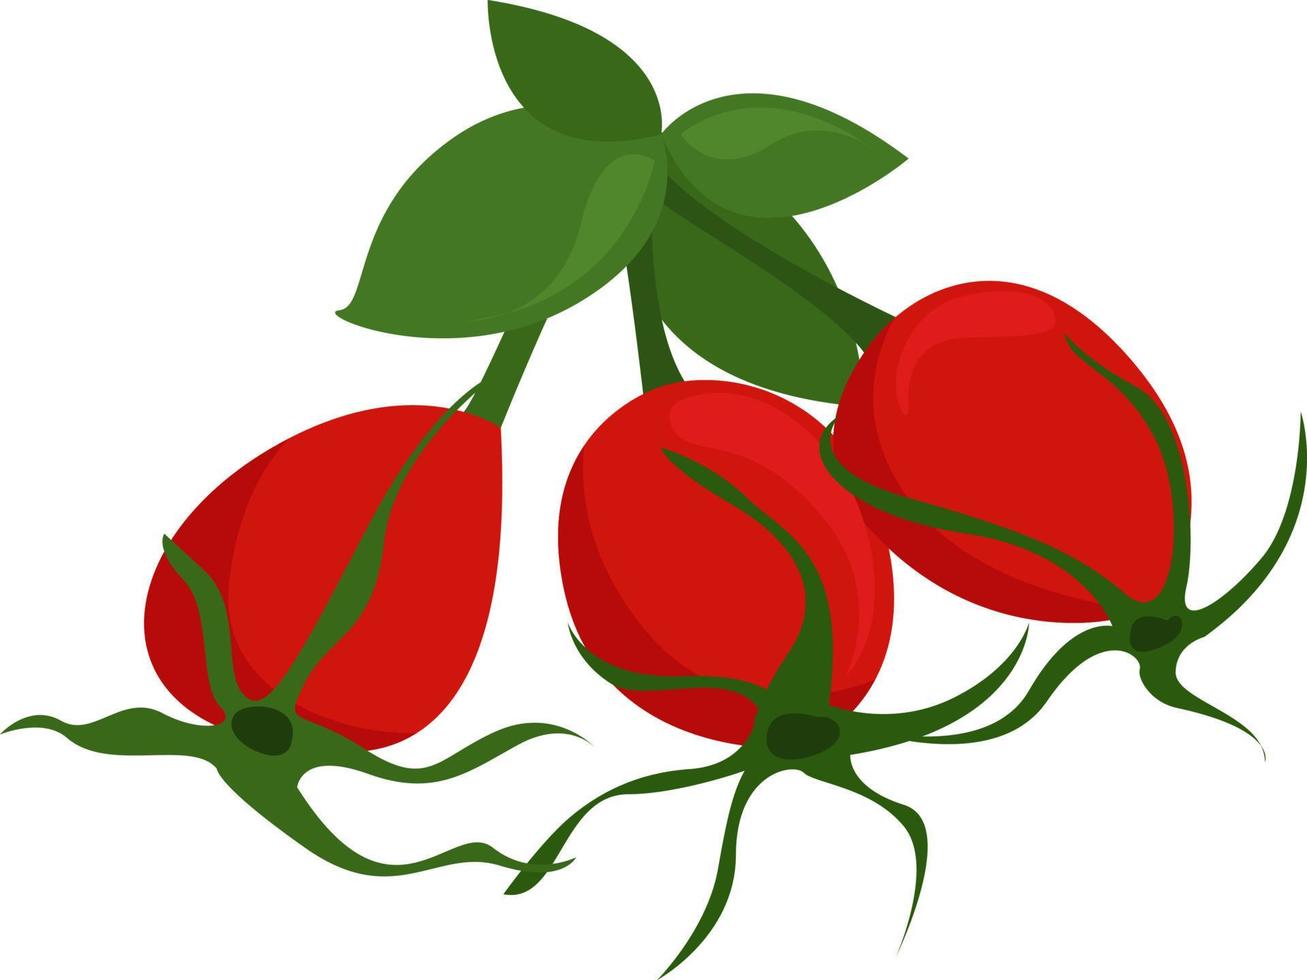 Rose hip, illustration, vector on white background